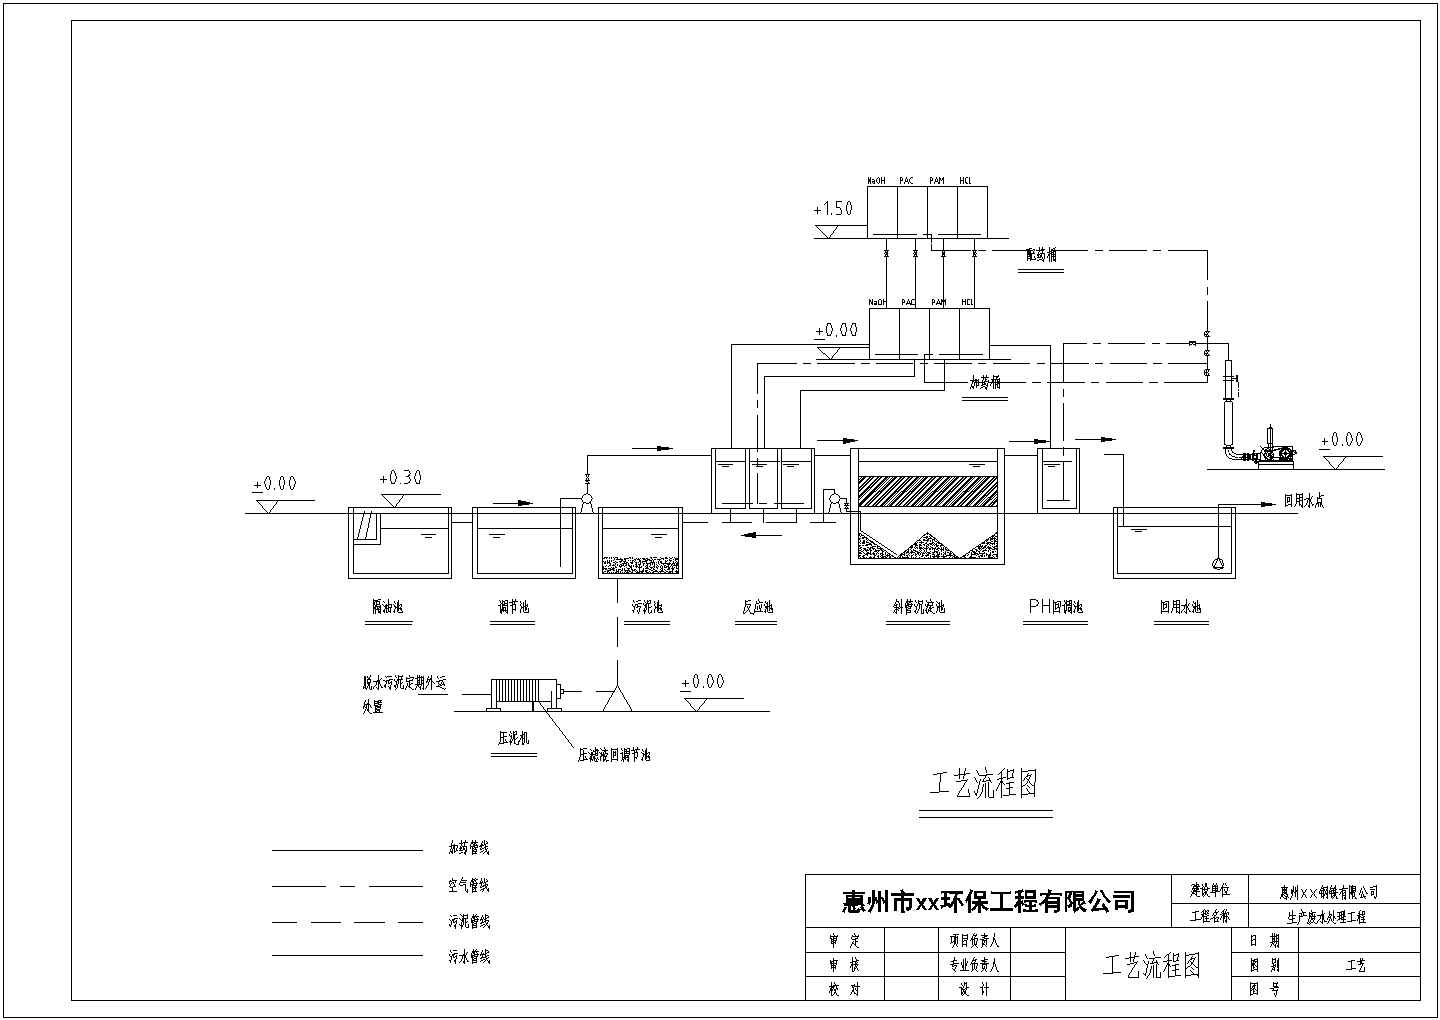 惠州某钢铁公司污水处理工艺流程图